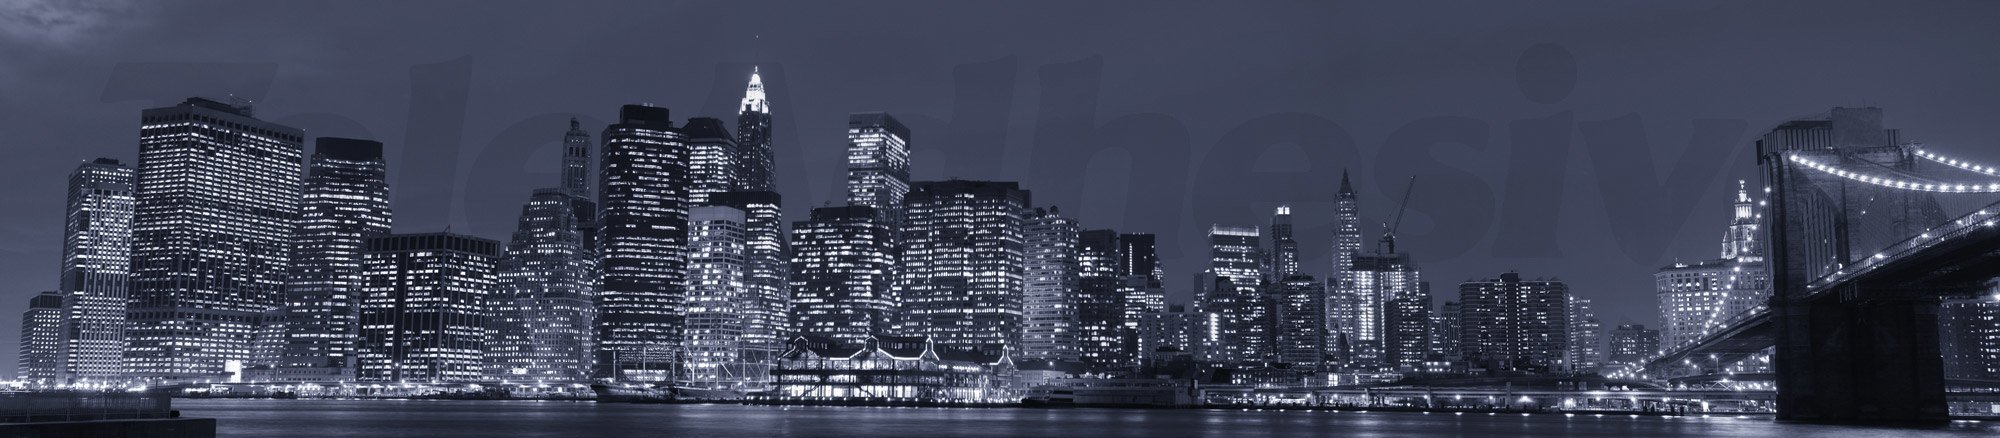 Fotomurales: Panorámica de Manhattan por la noche